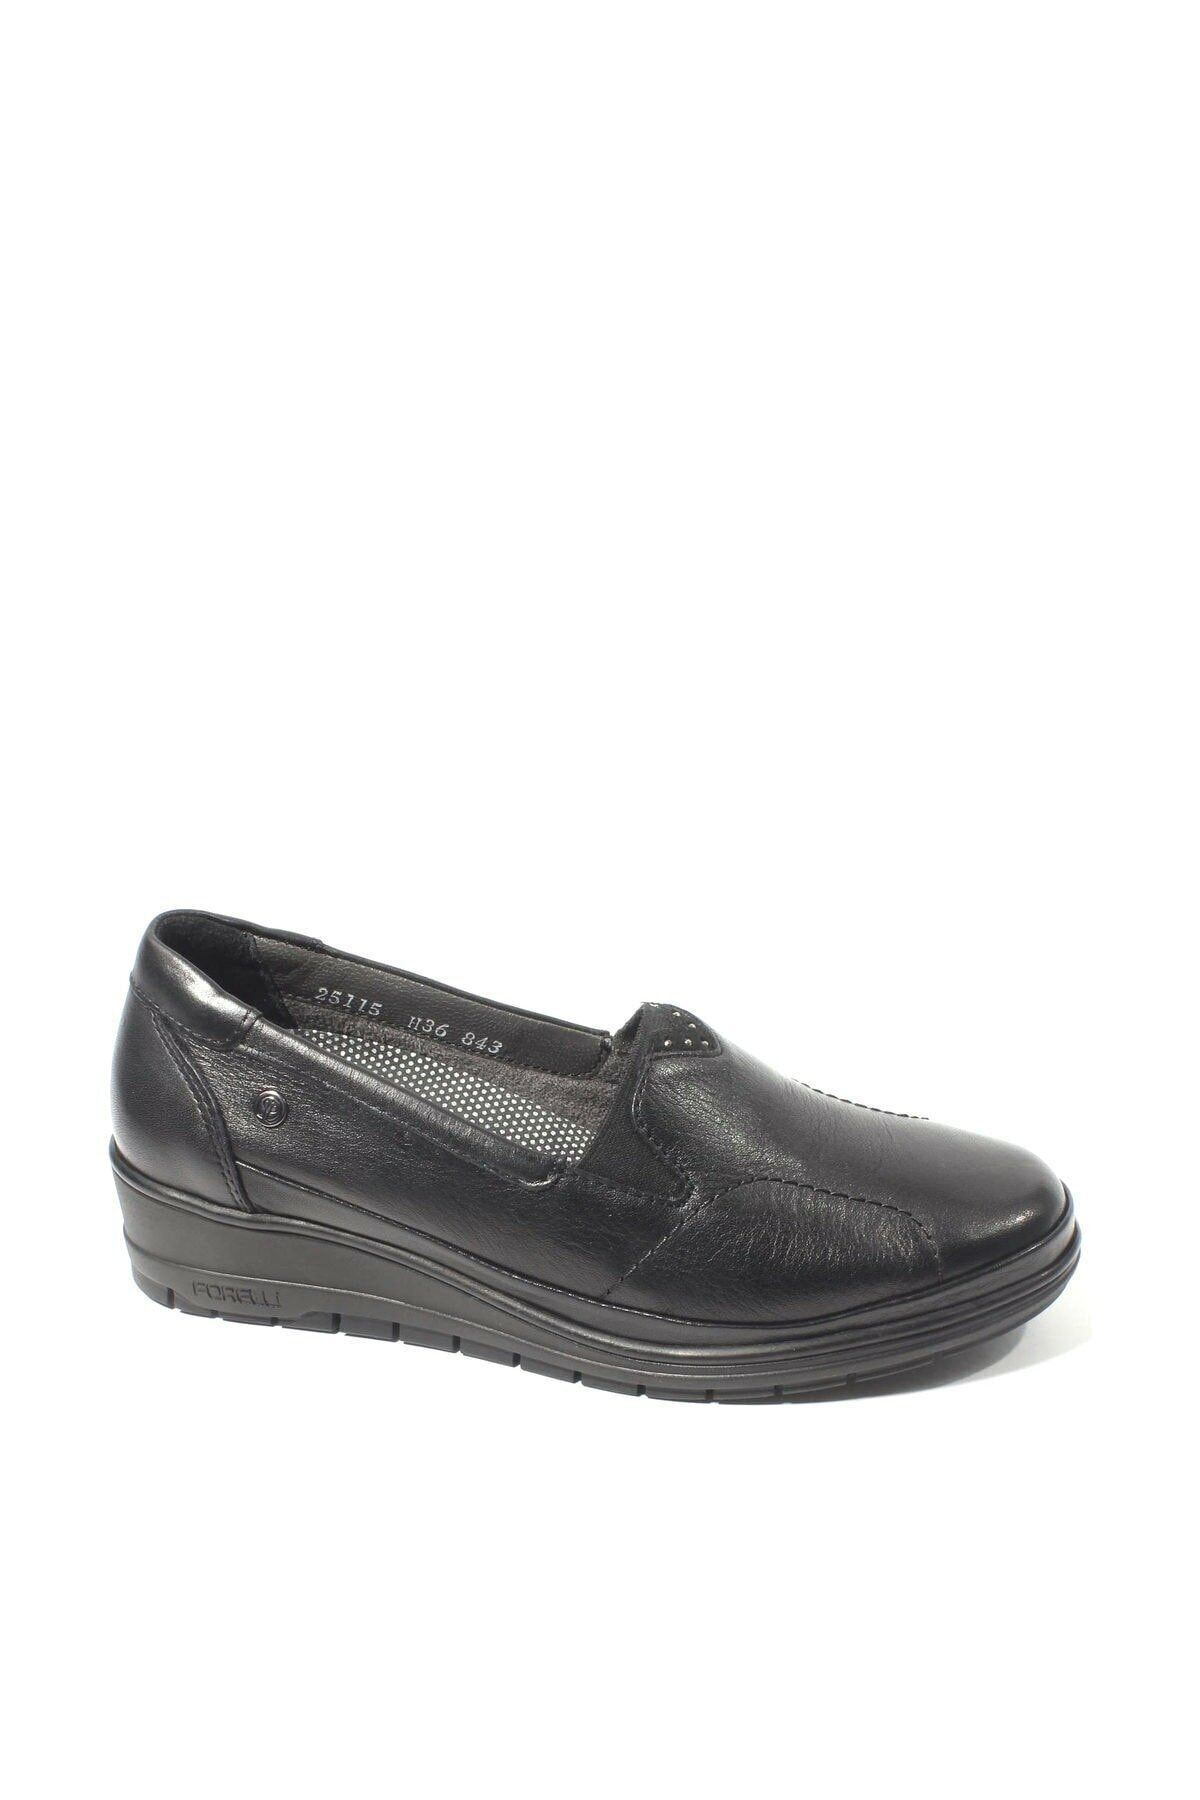 Forelli Nına-h Comfort Kadın Ayakkabı Siyah